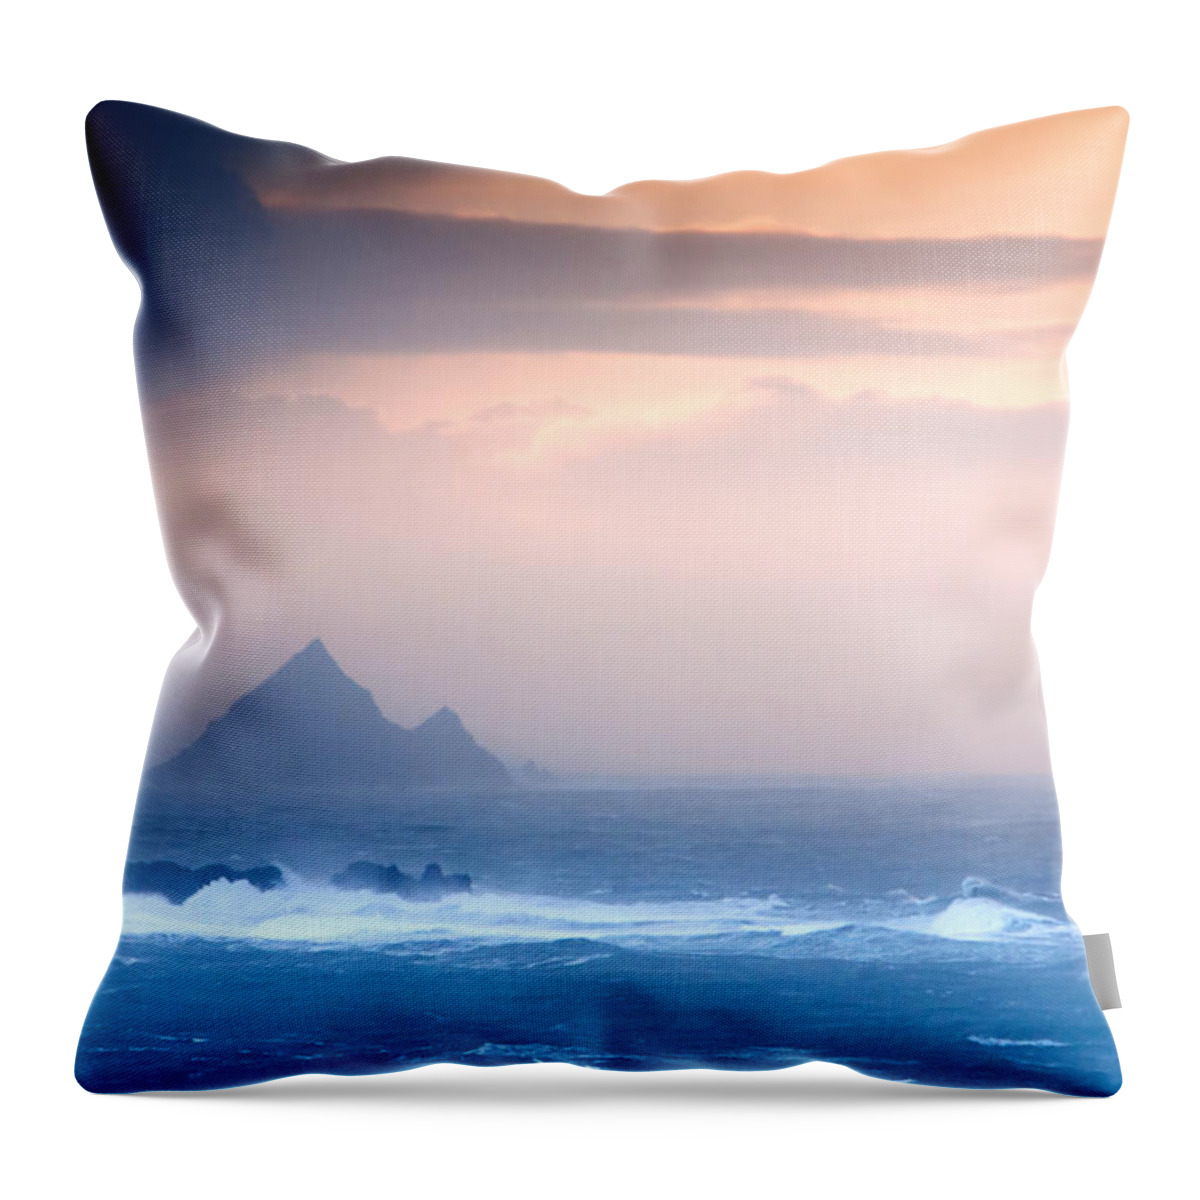 Tearagh Throw Pillow featuring the photograph Tearagh Island by Mark Callanan